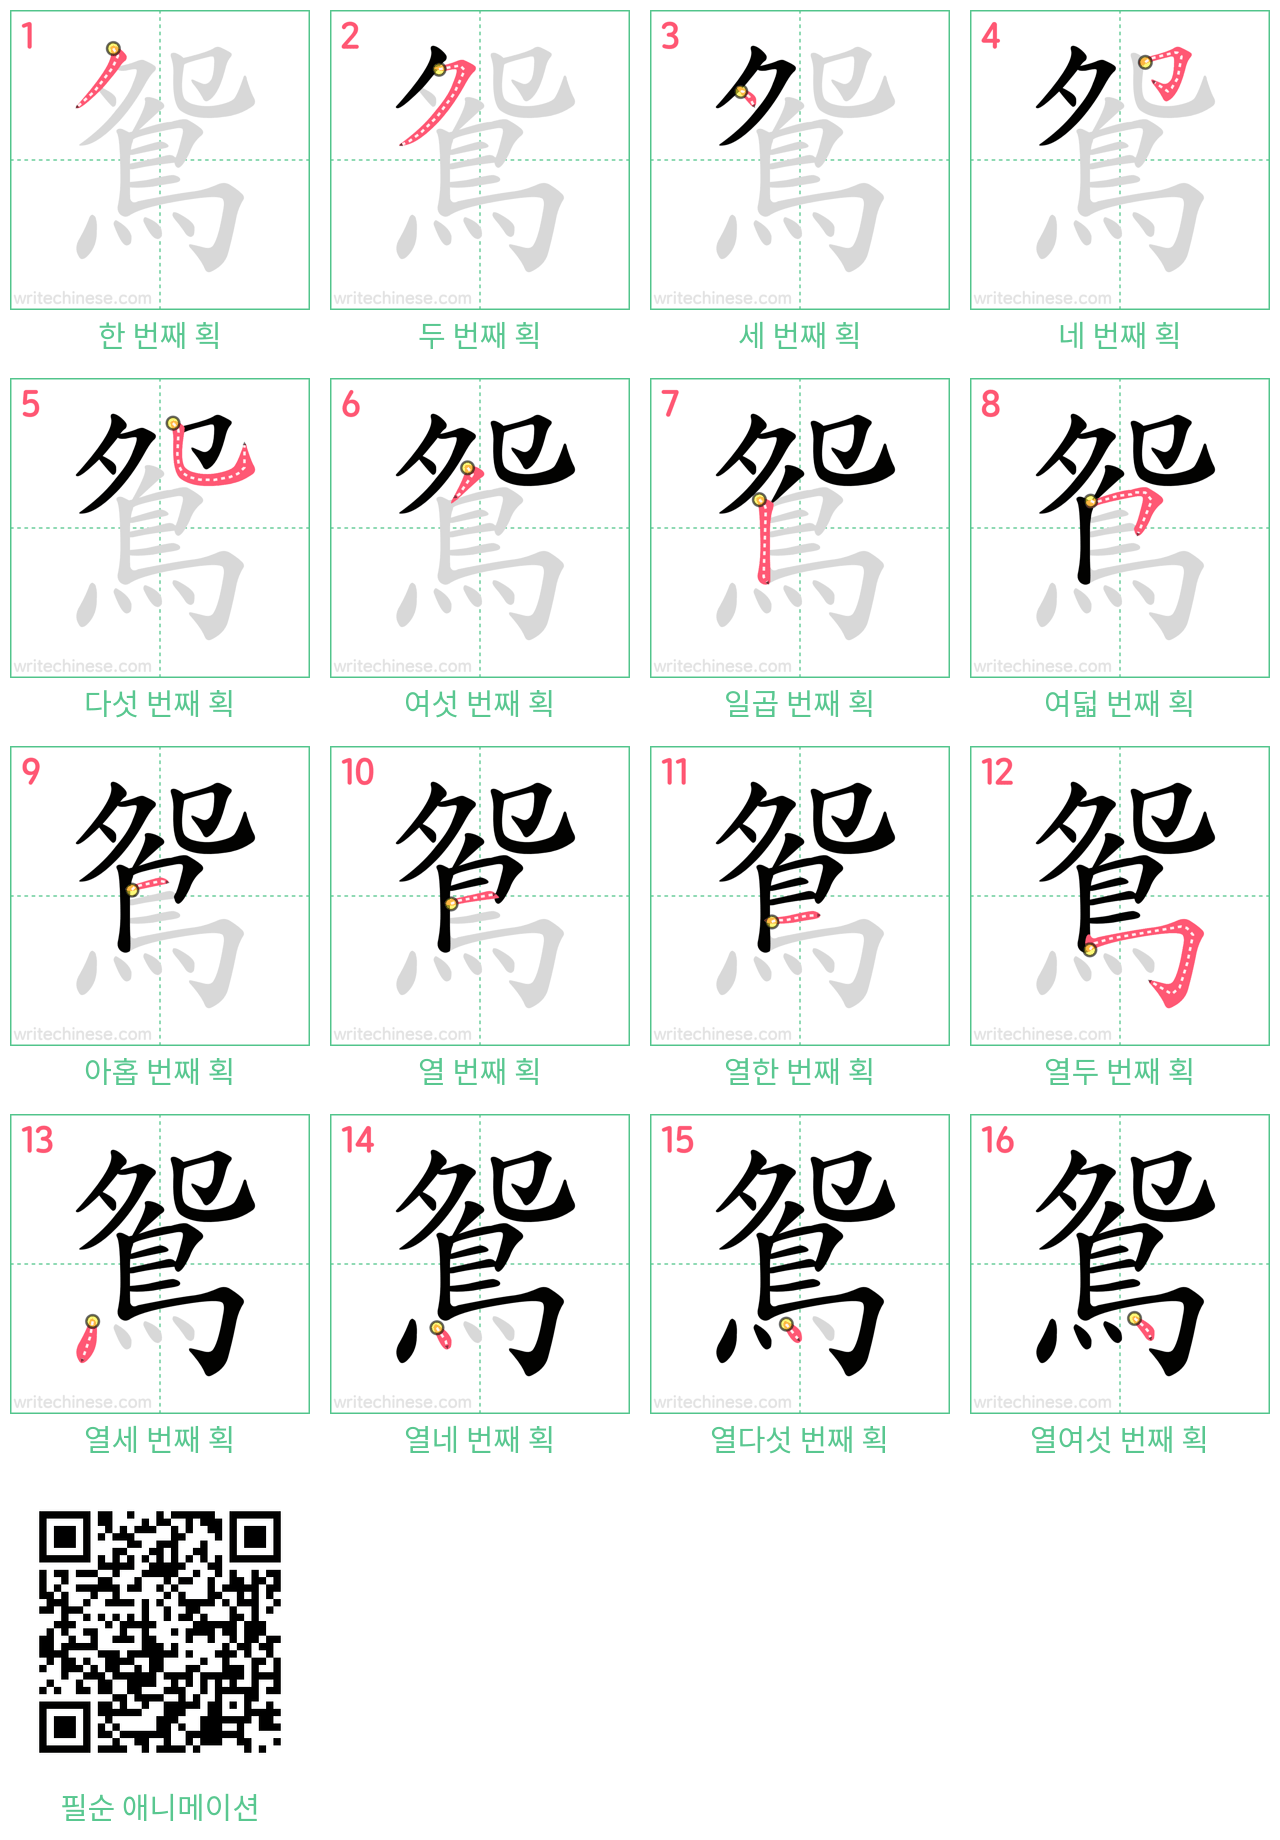 鴛 step-by-step stroke order diagrams